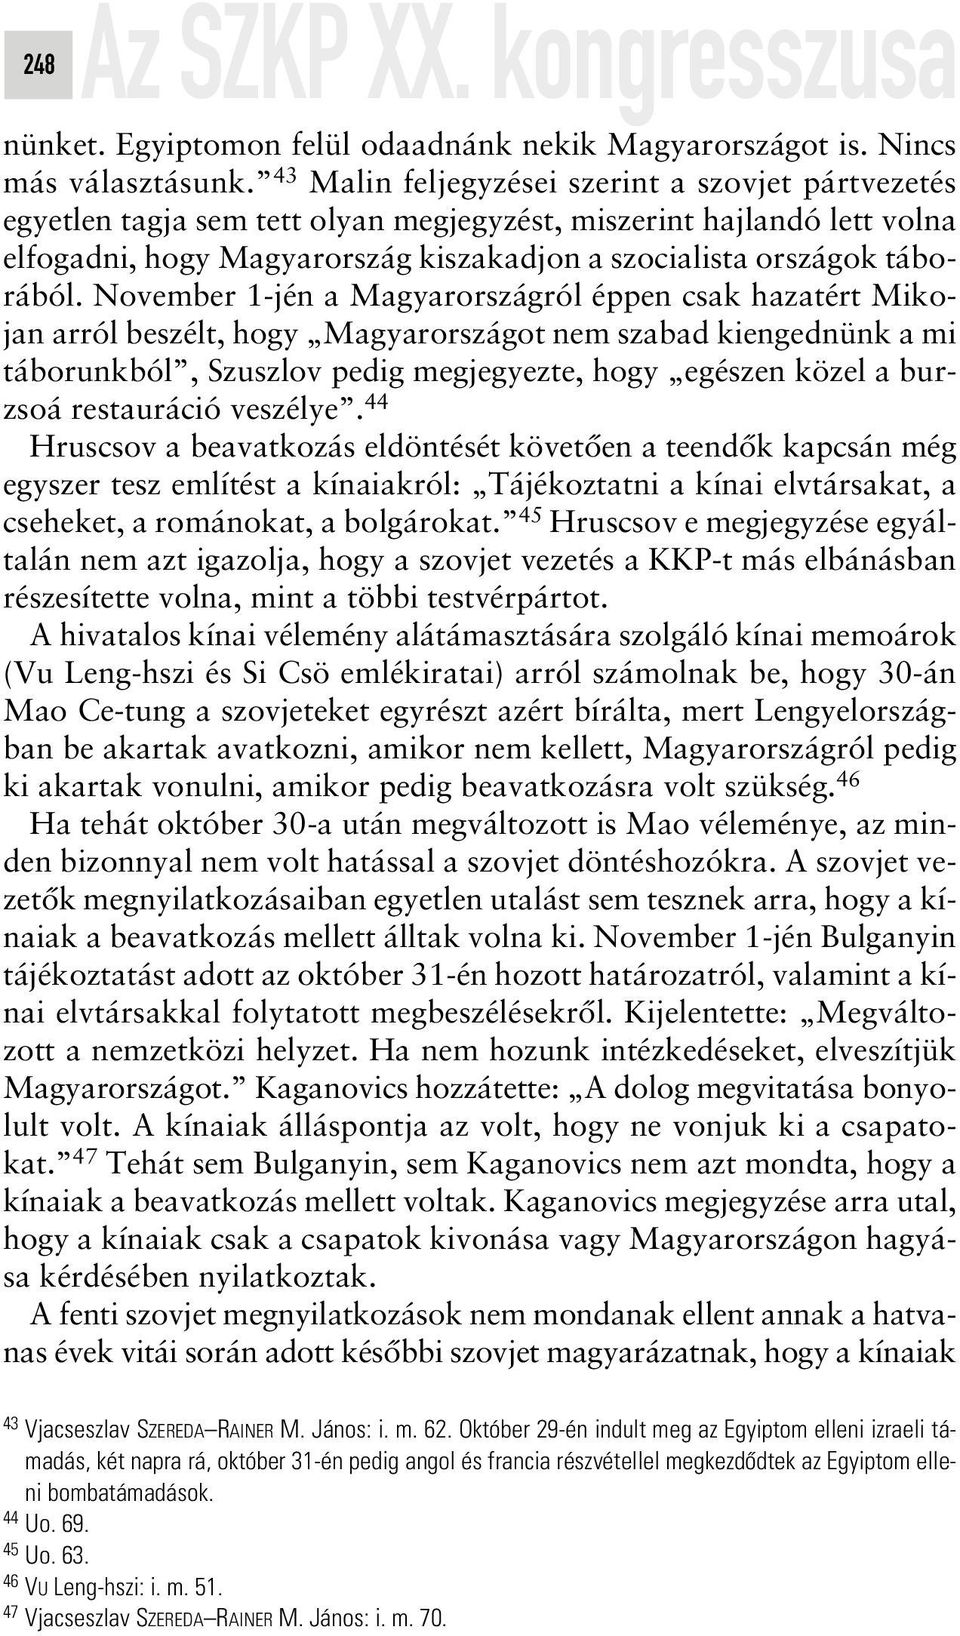 November 1-jén a Magyarországról éppen csak hazatért Mikojan arról beszélt, hogy Magyarországot nem szabad kiengednünk a mi táborunkból, Szuszlov pedig megjegyezte, hogy egészen közel a burzsoá